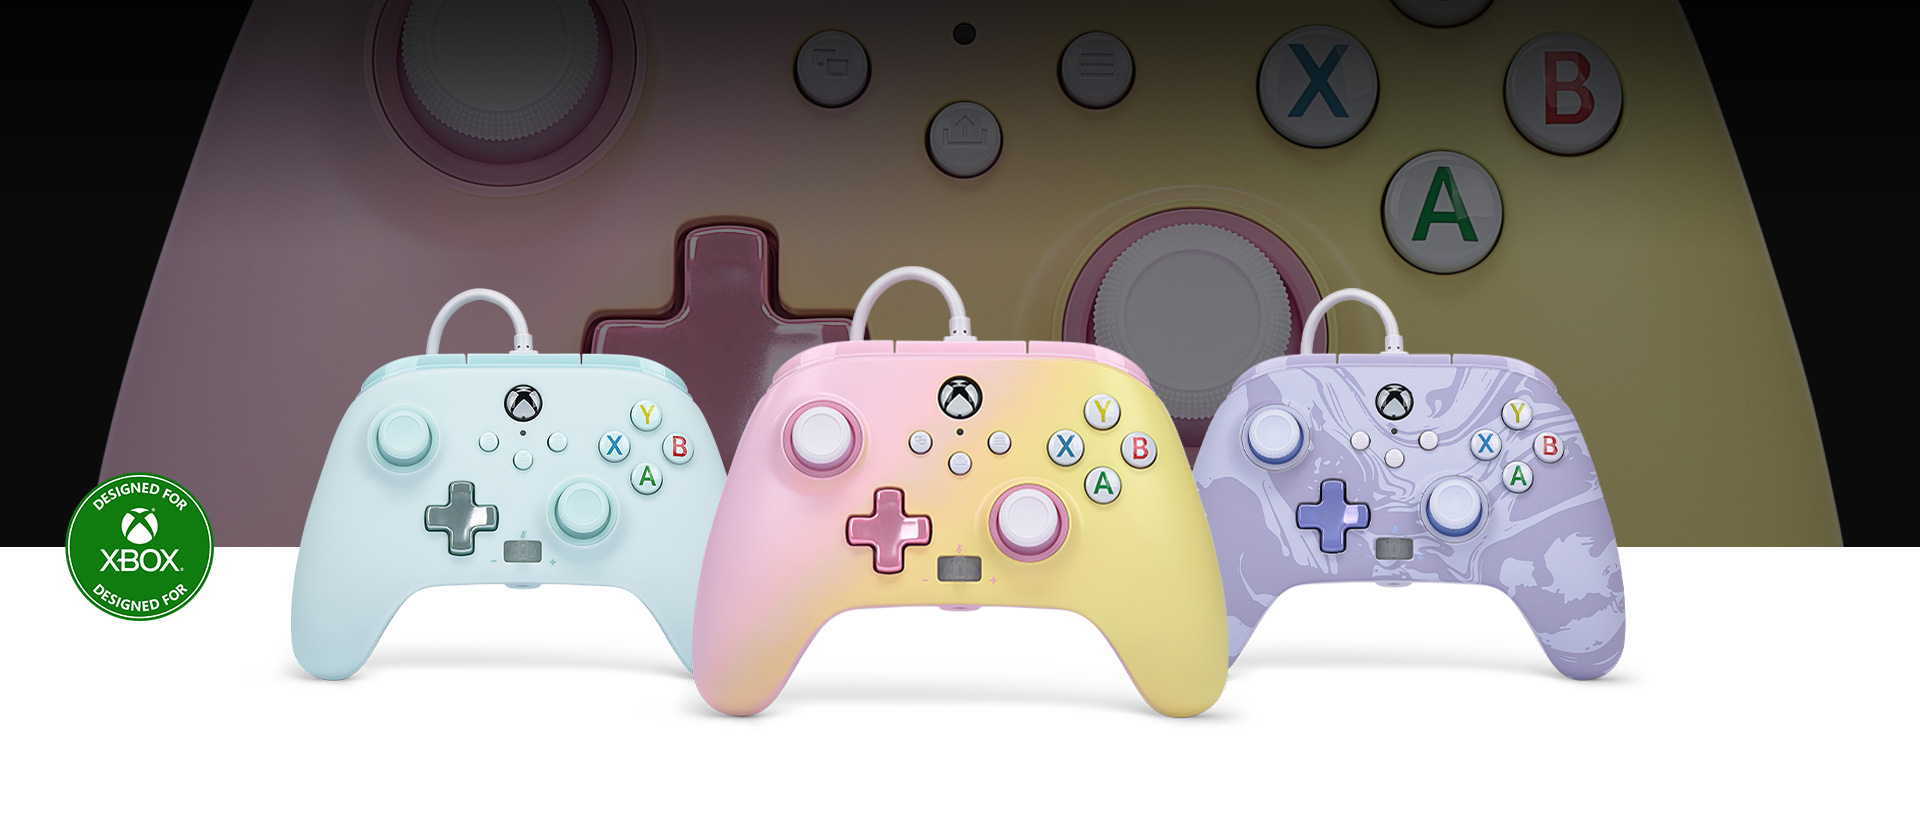 Logo Progettato per Xbox, un controller di colore Limonata rosa in primo piano rispetto ai controller Celeste zucchero filato e Vortice viola